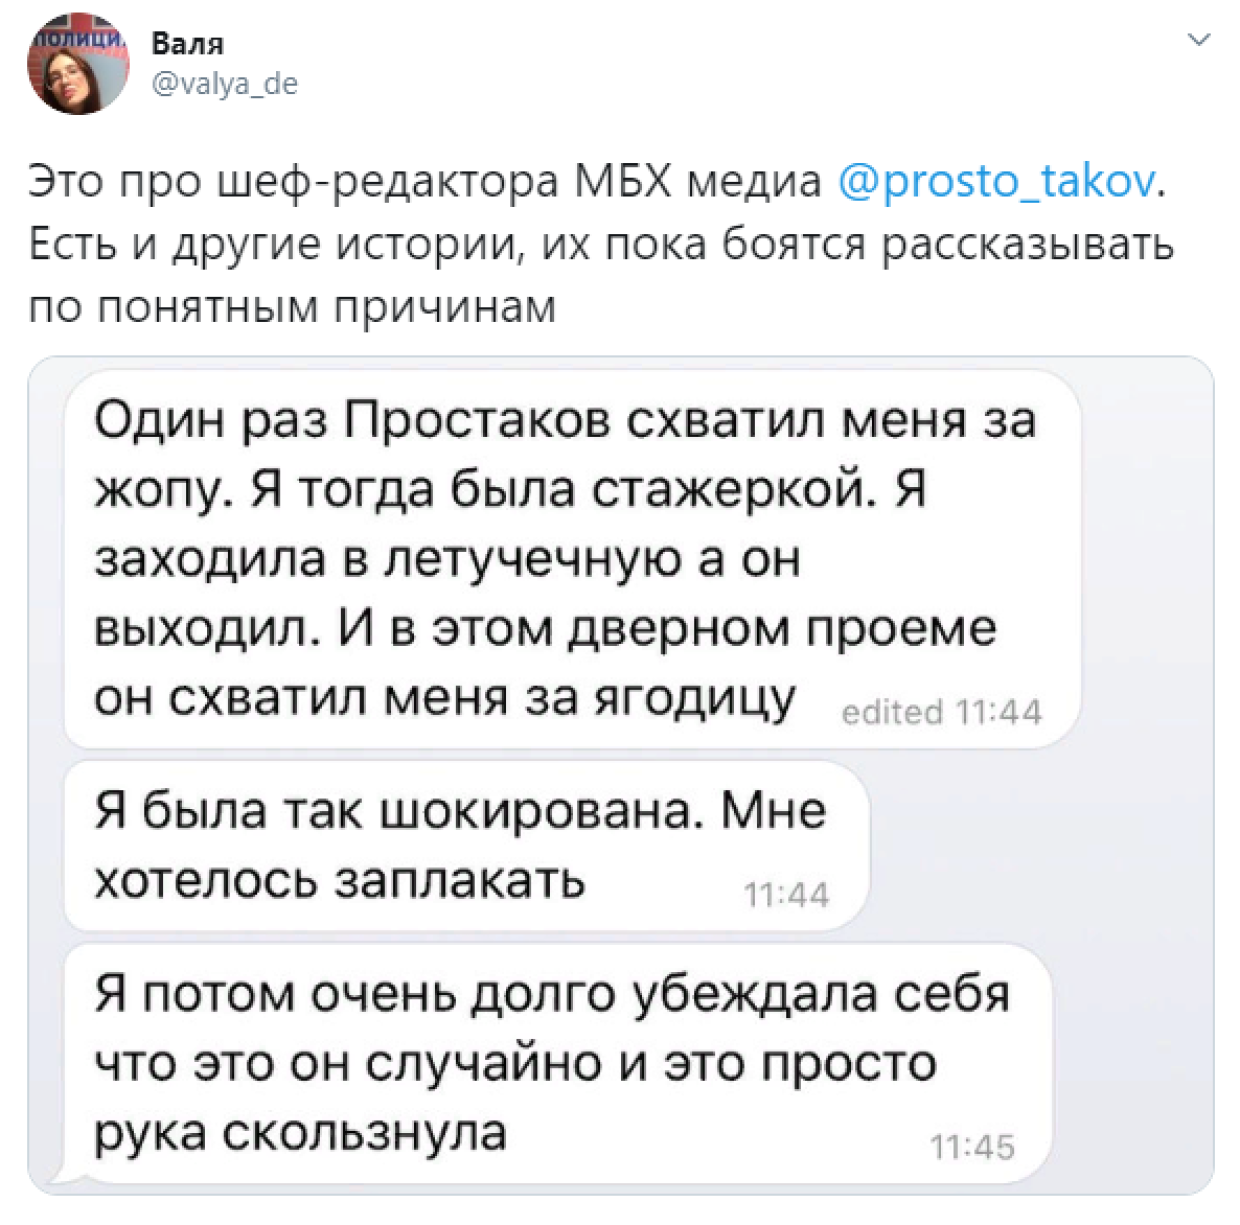 Шеф-редактора «МБХ-Медиа» Простакова обвинили в домогательствах